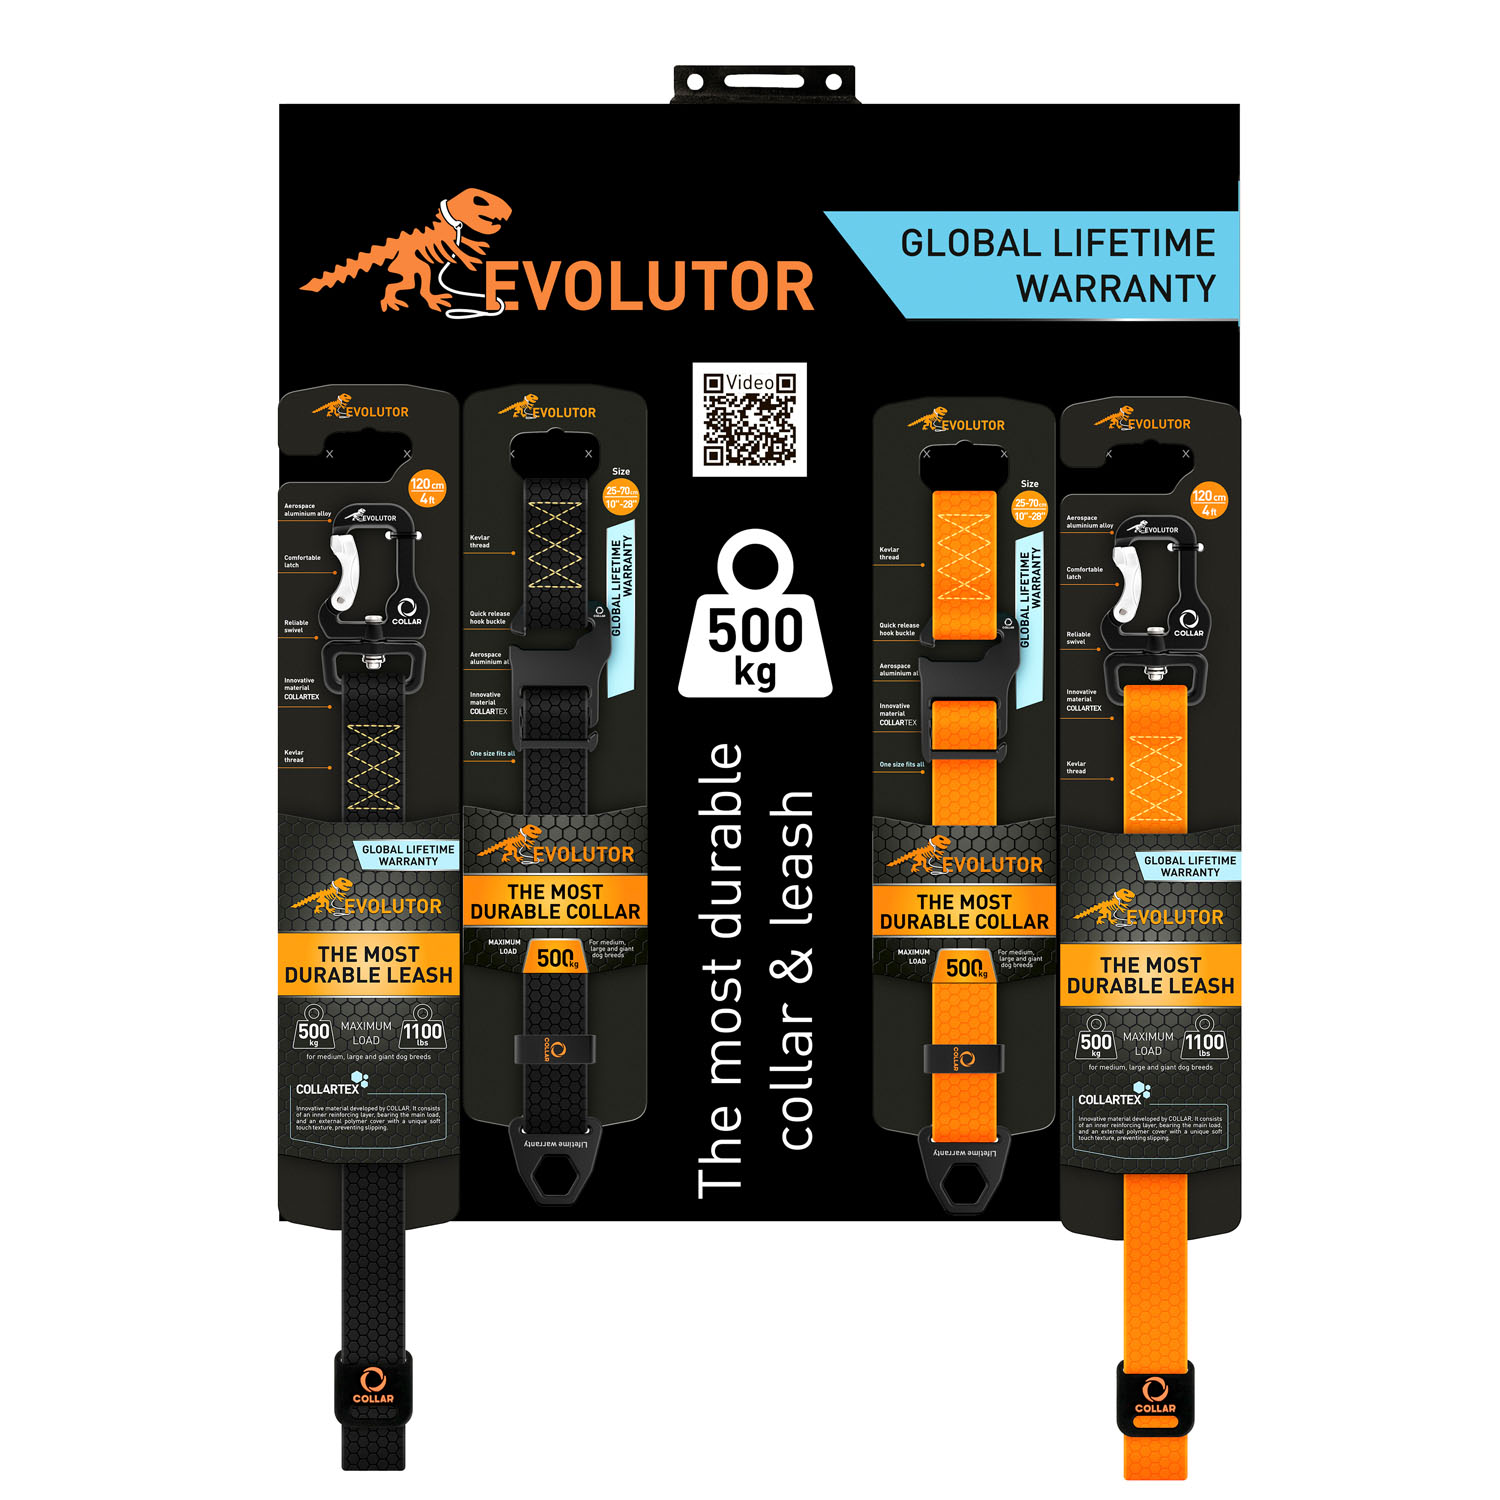 Trade equipment for EVOLUTOR